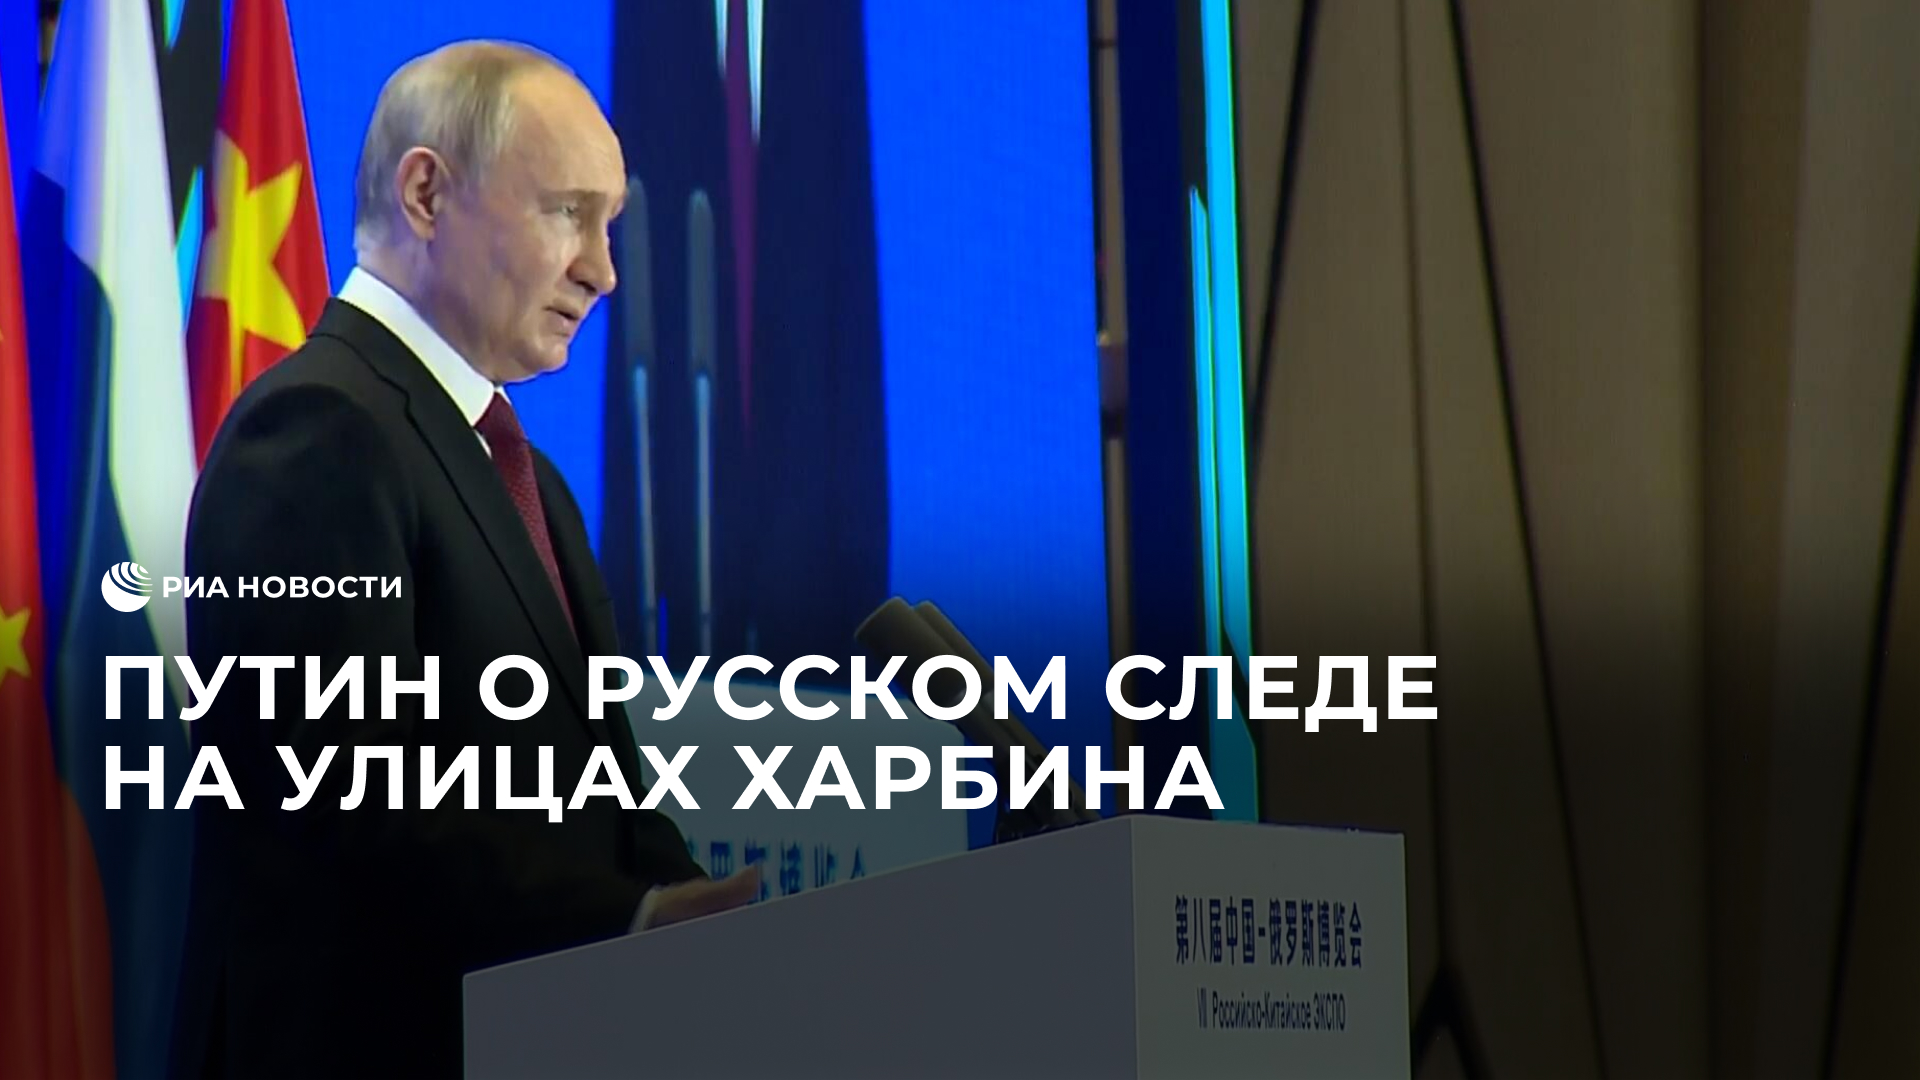 Путин о русском следе на улицах Харбина